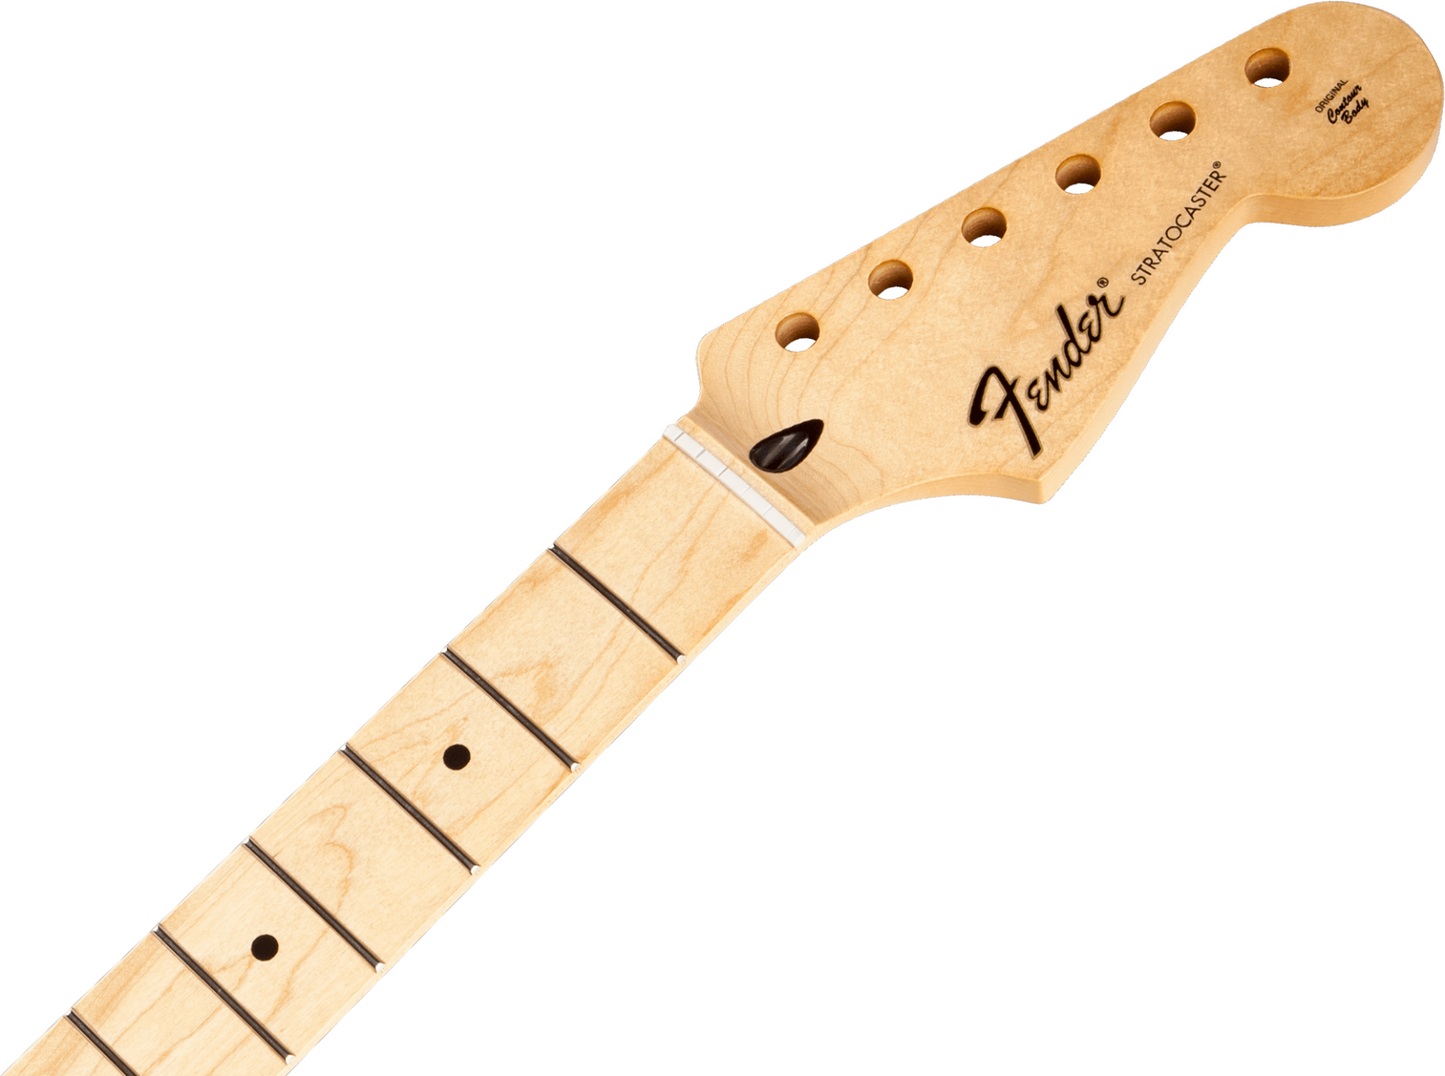 Fender Standard Stratocaster Maple Neck